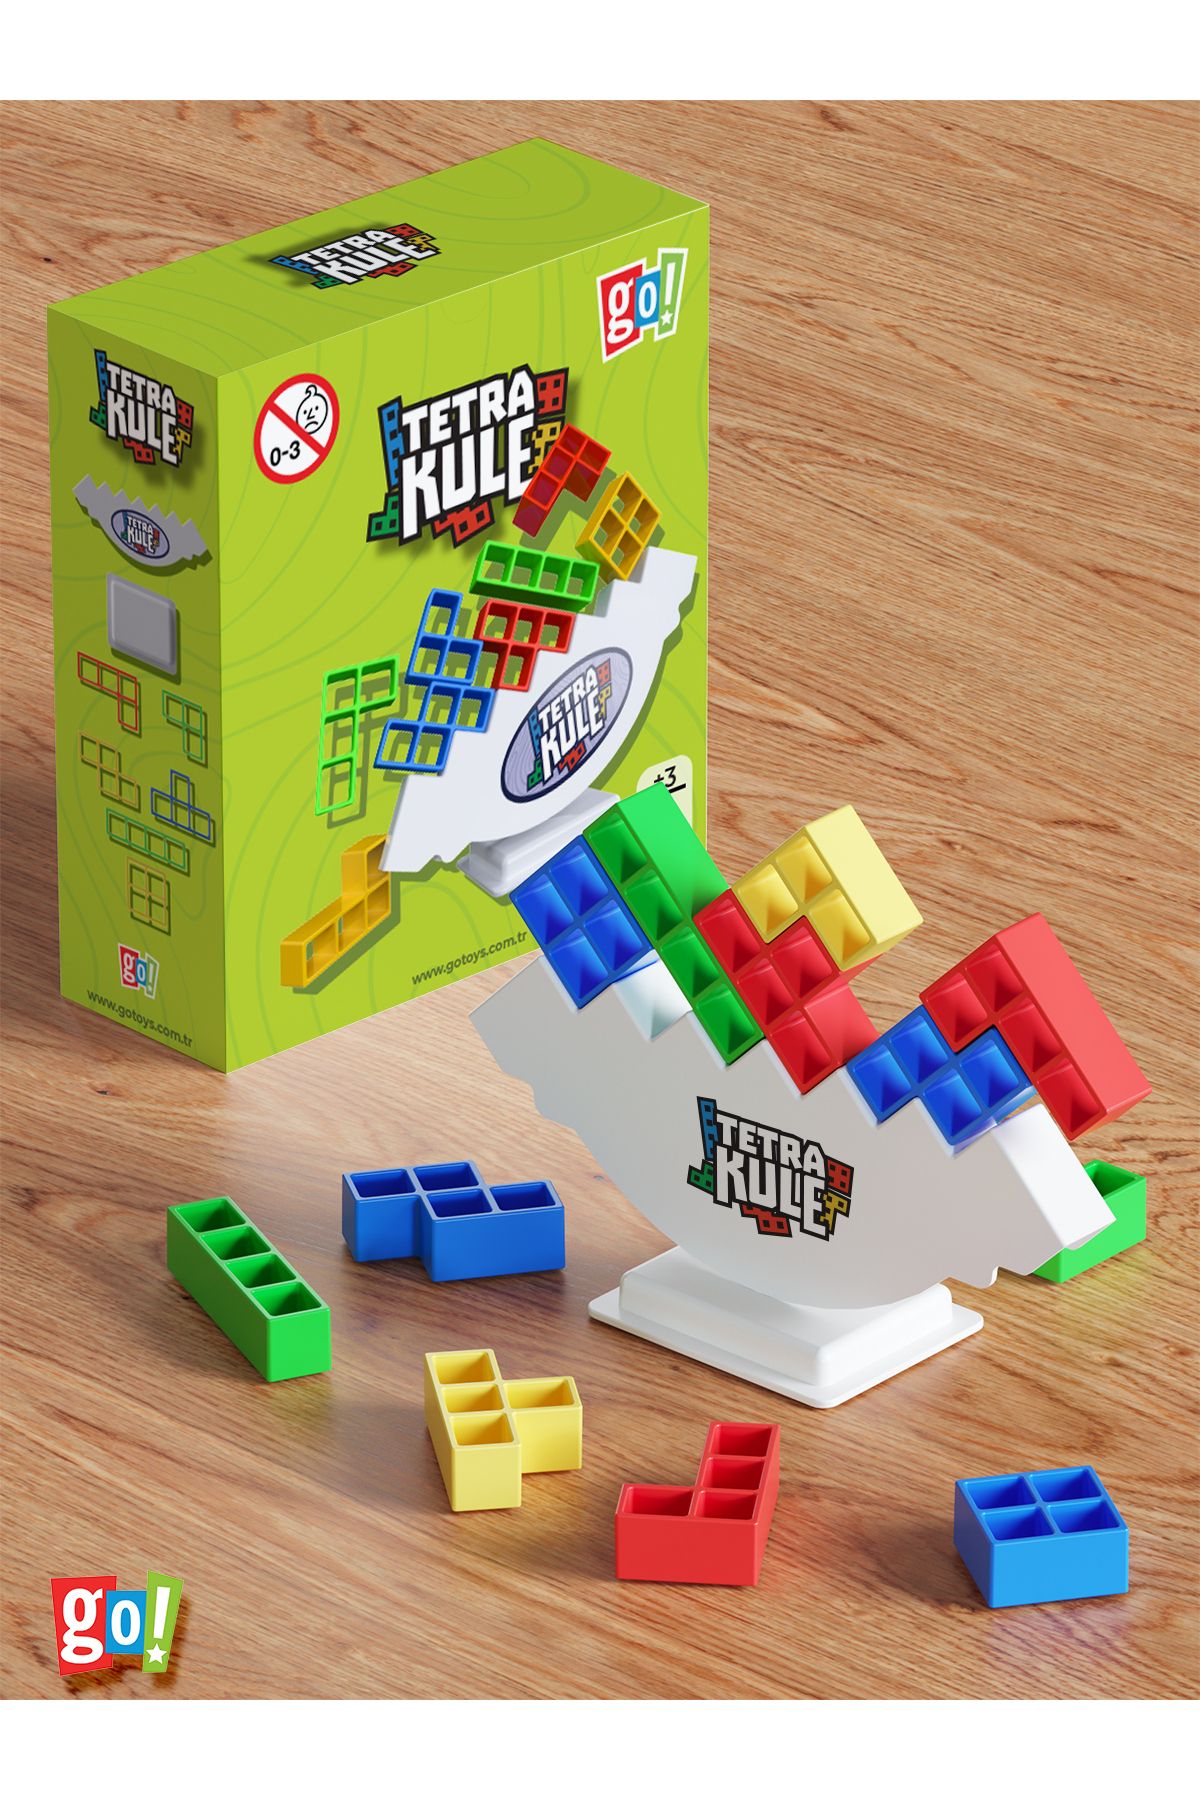 Go Toys Tetra Kule Denge Oyuncağı Eğitici Kutu Oyuncak Tetris Kule Tetra Tower